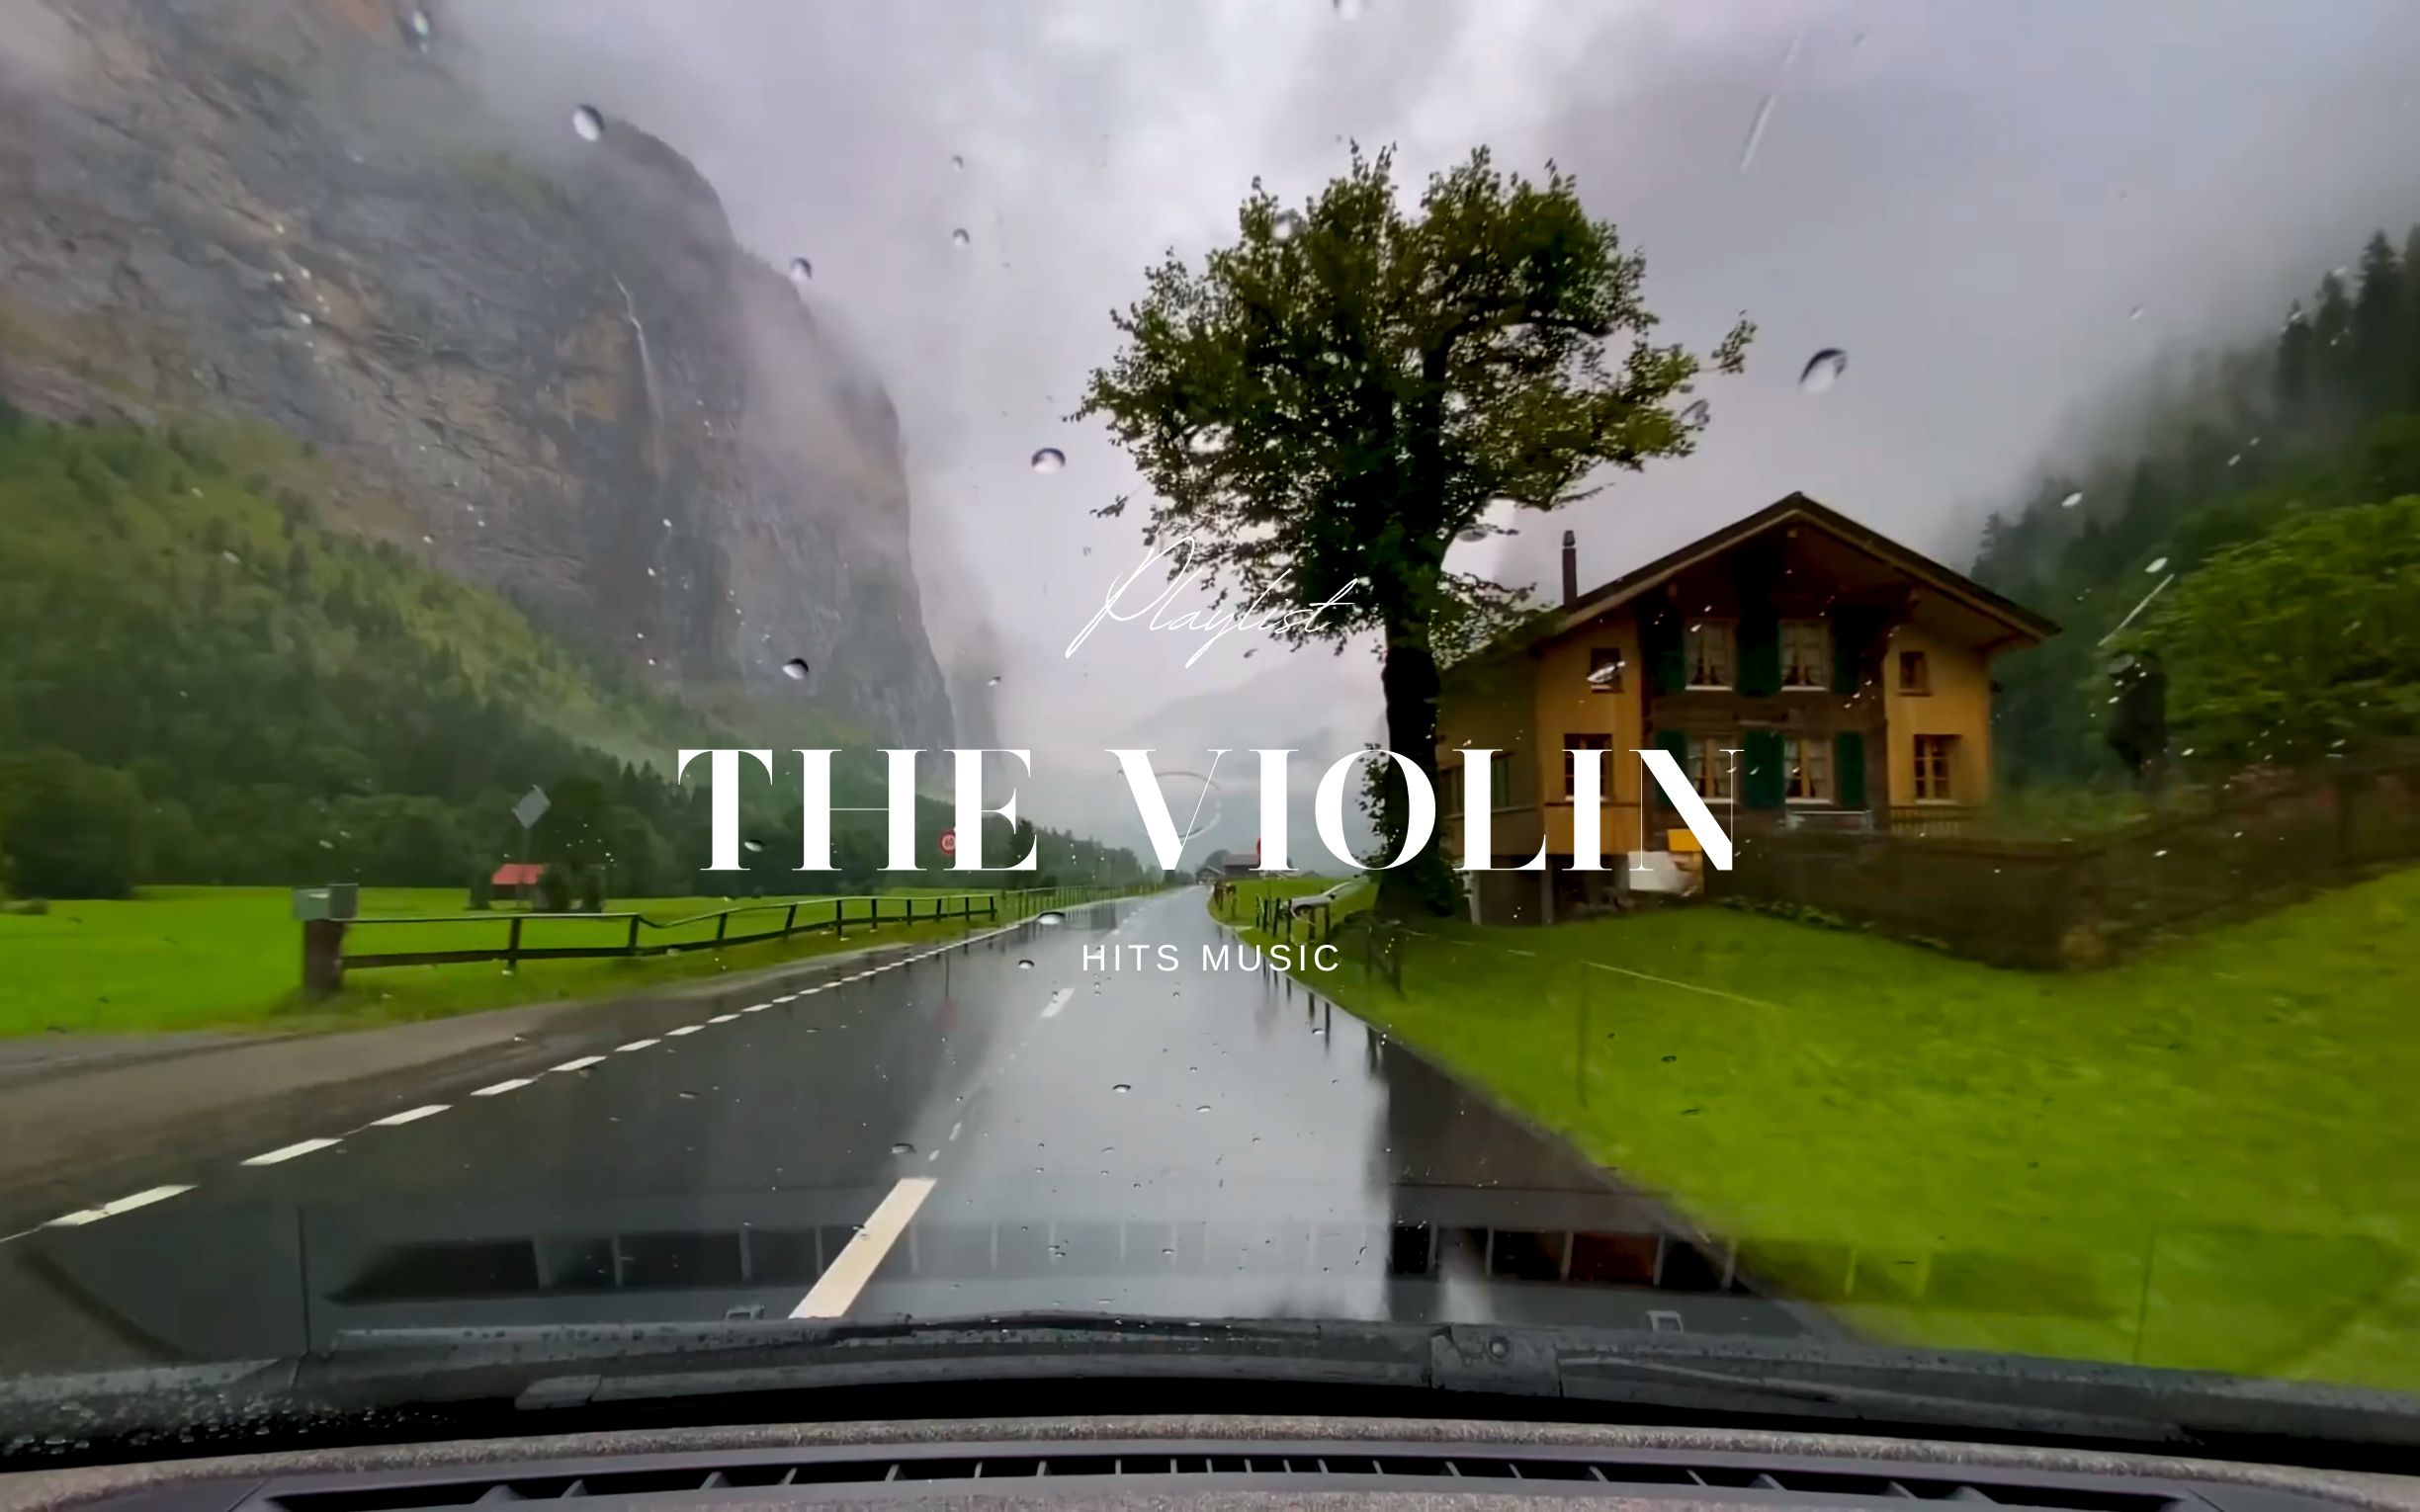 [𝗽𝗹𝗮𝘆𝗹𝗶𝘀𝘁] 🚗 4K视频 | 旅行 | 开车驶过瑞士小镇 | 小提琴歌单